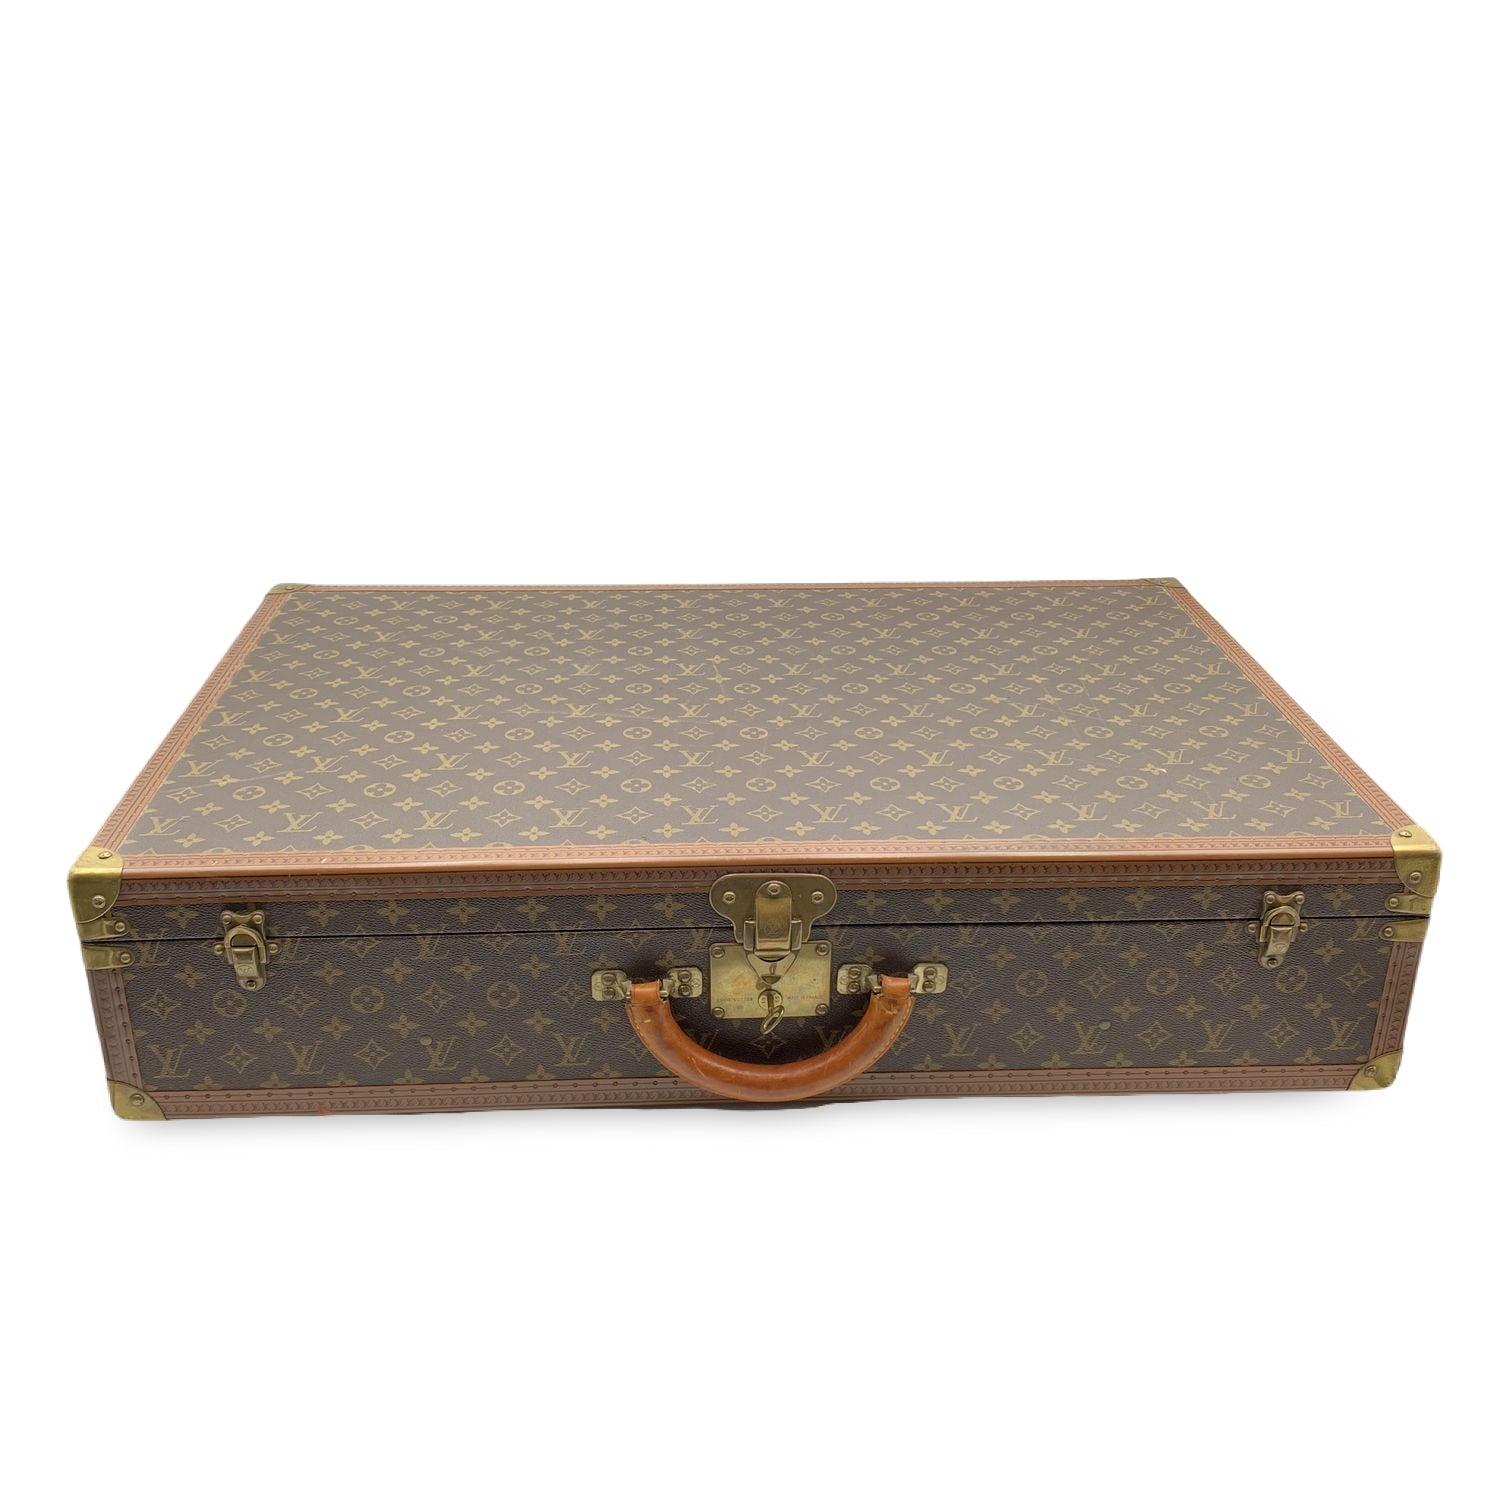 LOUIS VUITTON vintage Monogram Bisten 80 Suitcase. Un élément de l'histoire de Louis Vuitton, idéal pour voyager ou pour décorer la maison ou le bureau. Monogramme en toile. Monogrammes LV embossés sur la garniture. Poignée en cuir arrondie.